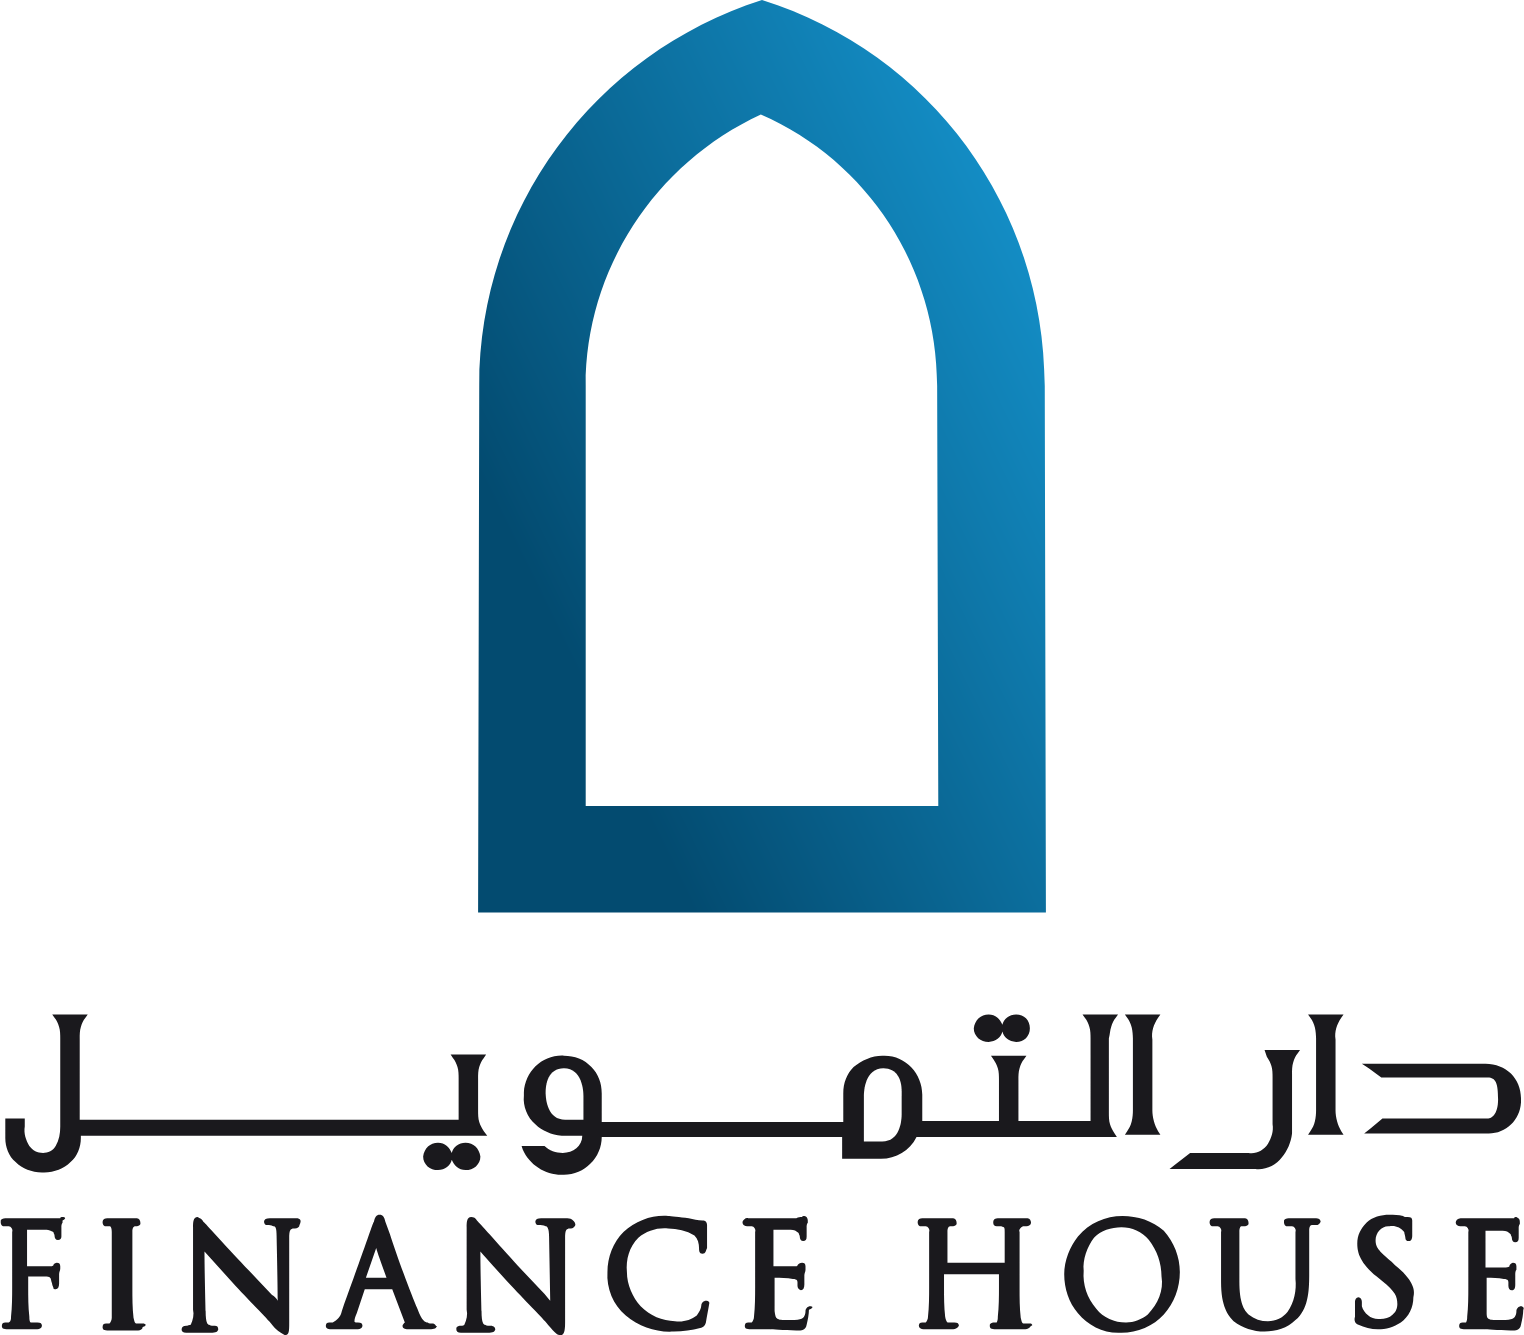 Finance House logo large (transparent PNG)